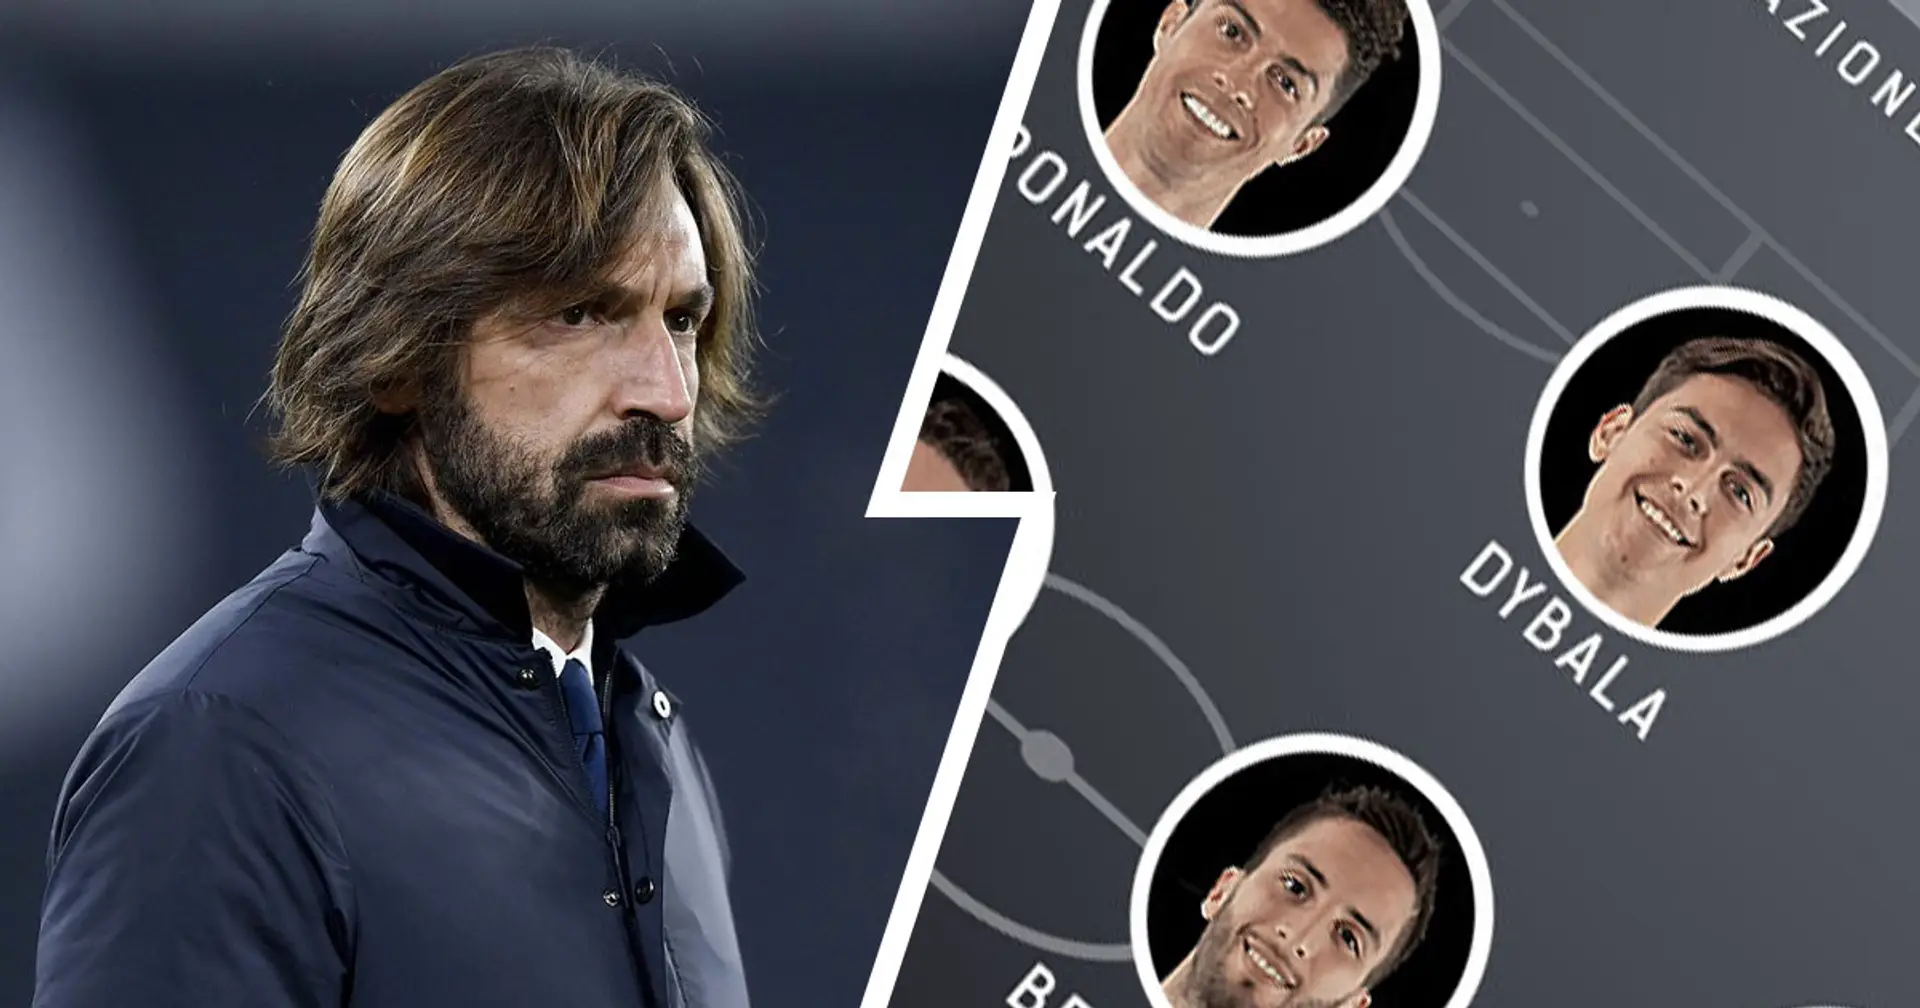 Le probabili formazioni di Juventus-Torino: Dybala torna titolare nel Derby con CR7 , chance per Kulusevski